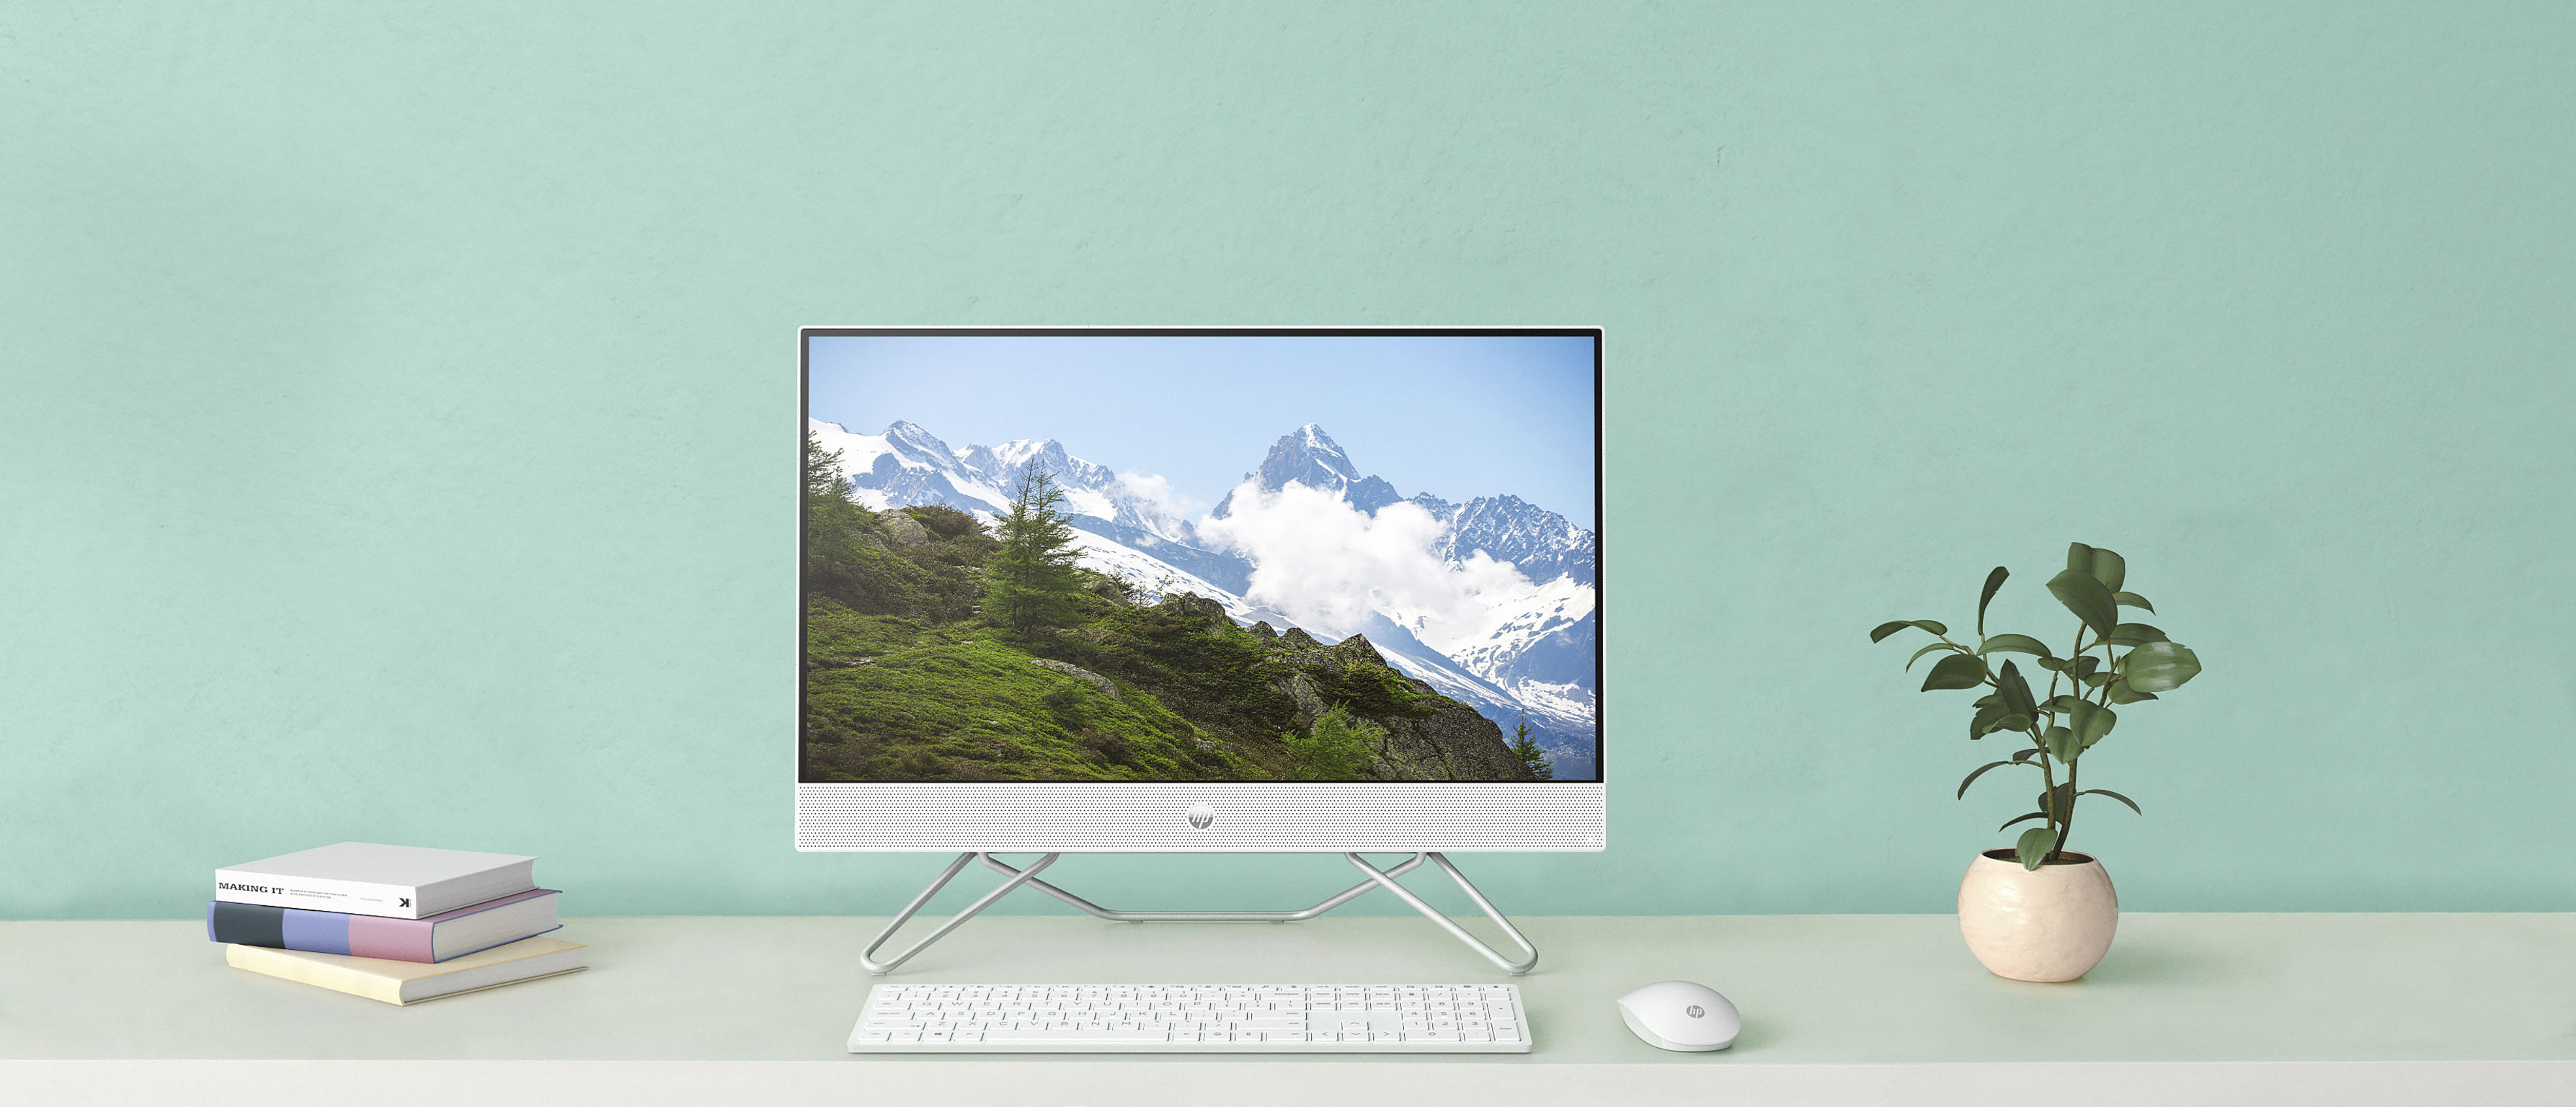 HP All-in-One Desktop